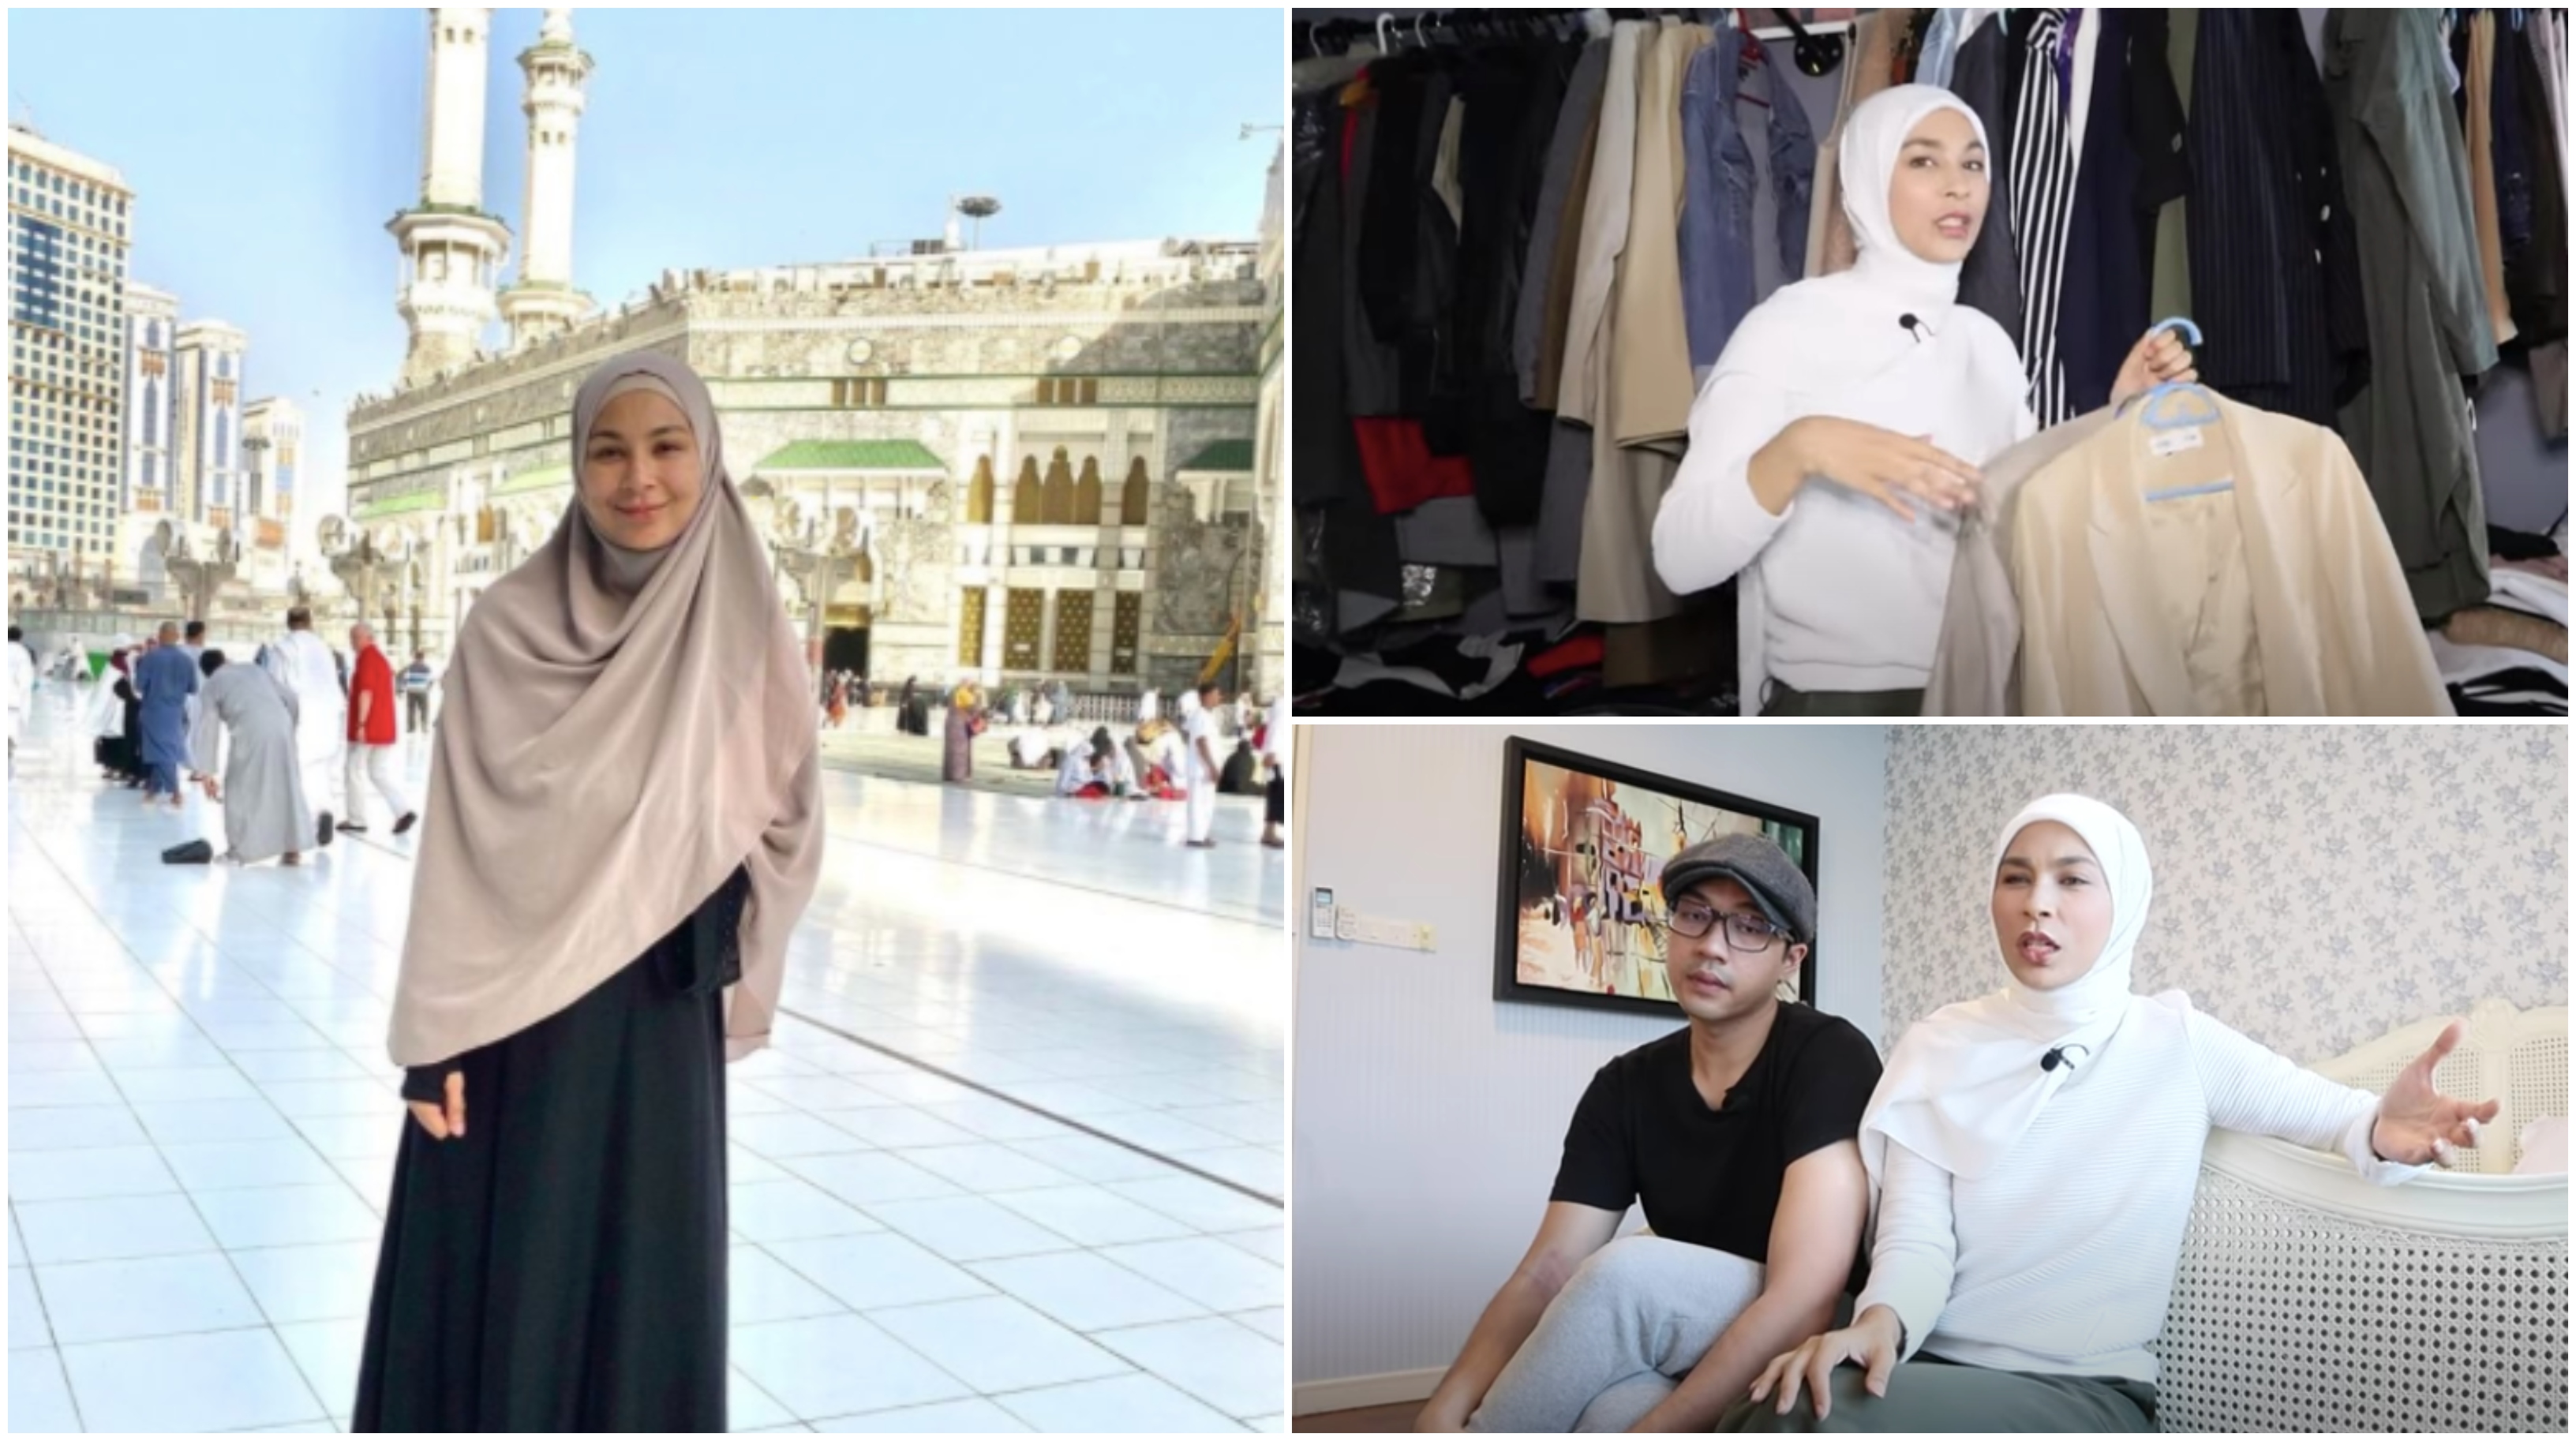 ‘Dari Pakaian Non-Halal Ke Muslimah’ – Cerita Hijrah Fesyen Gadis Trivago Perlu Dijadikan Inspirasi